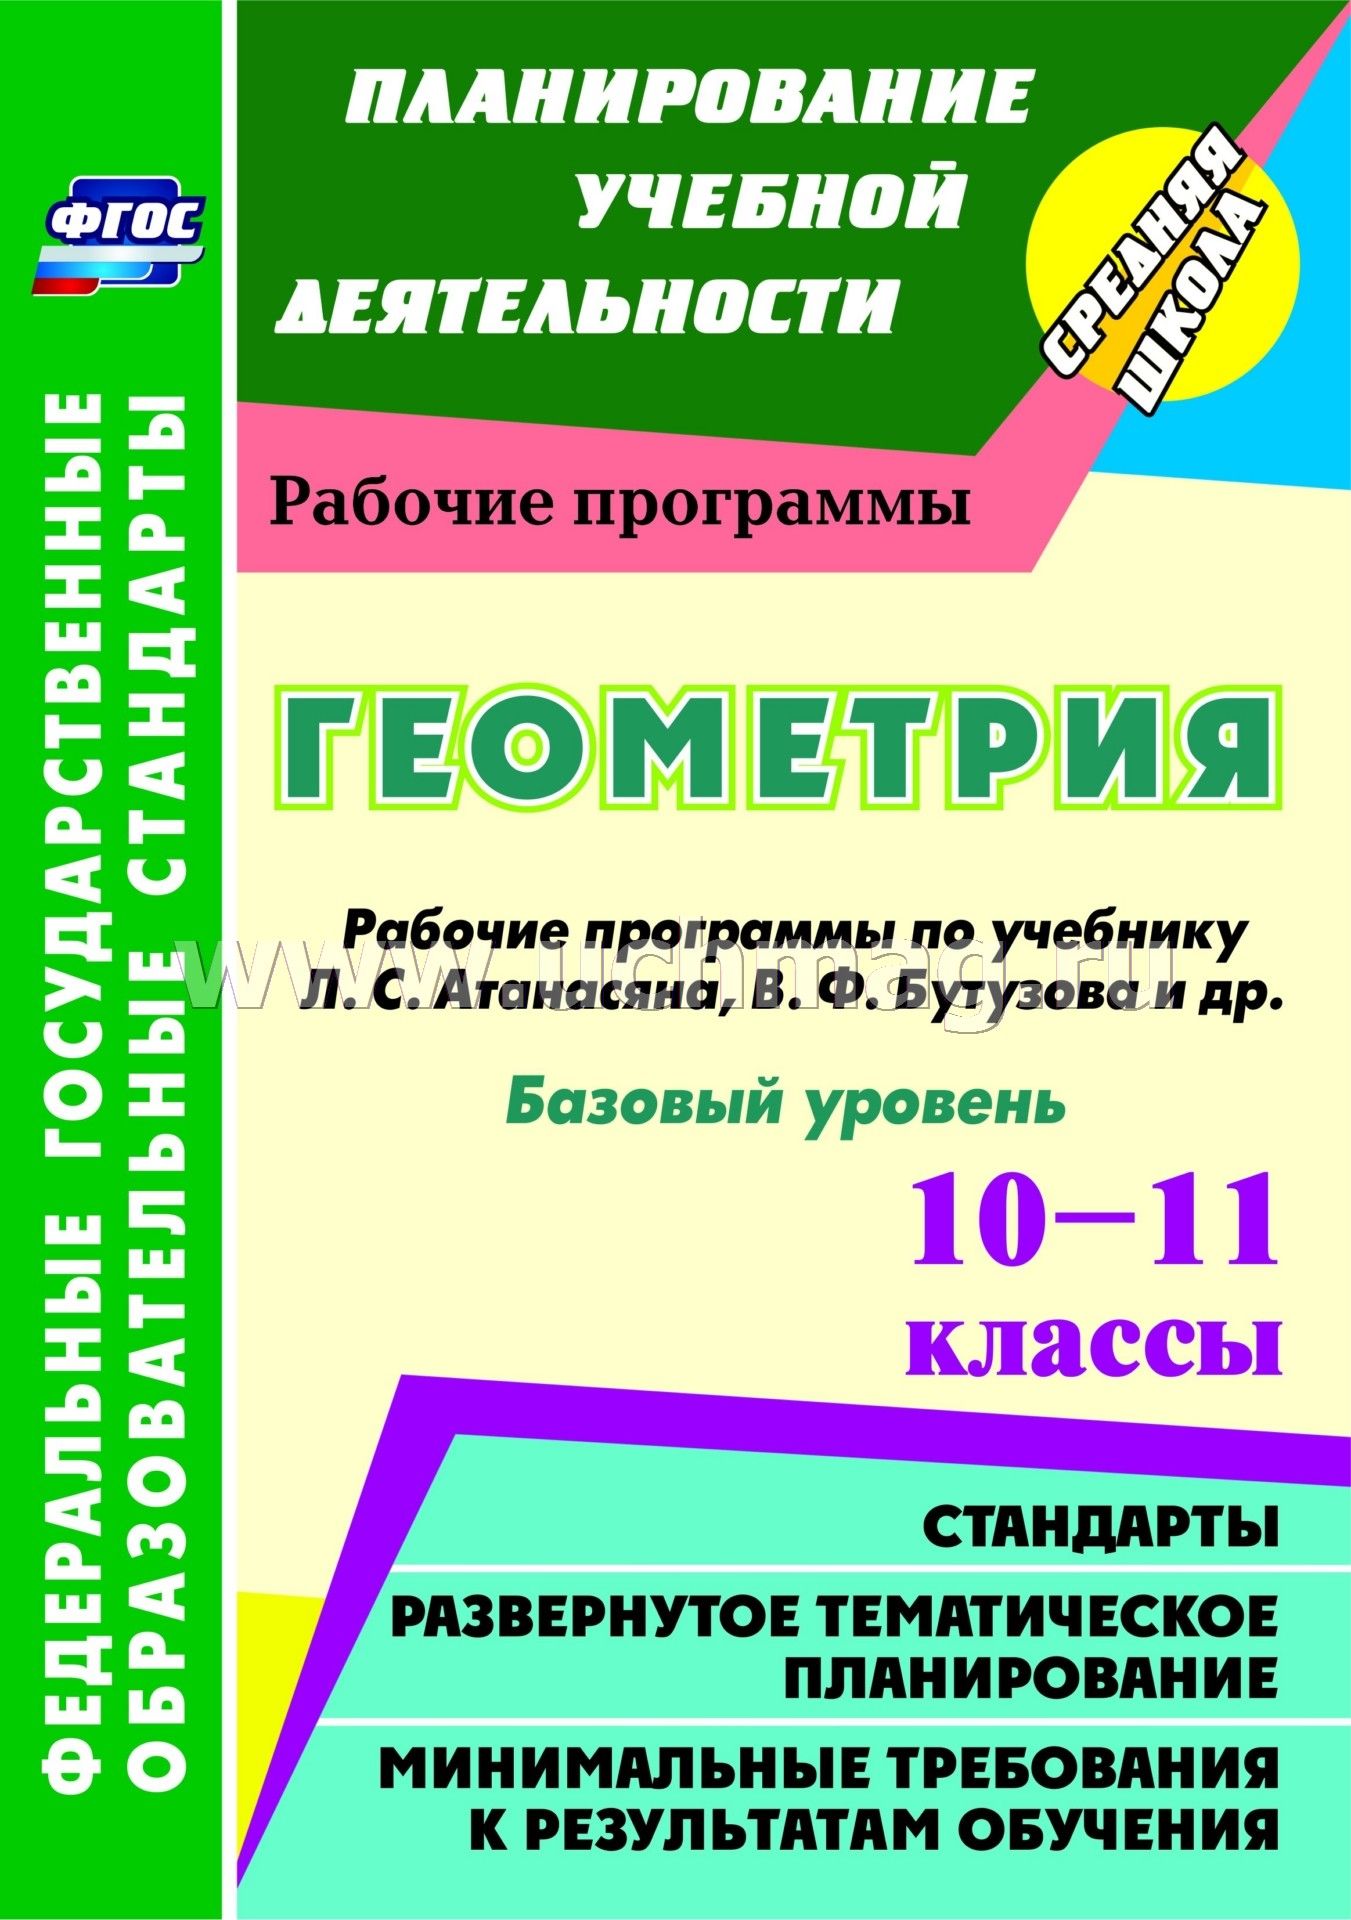 Календарно тематическое планирование по географии рабочая программ для 10-11 класса по учебнику впмаксаковского